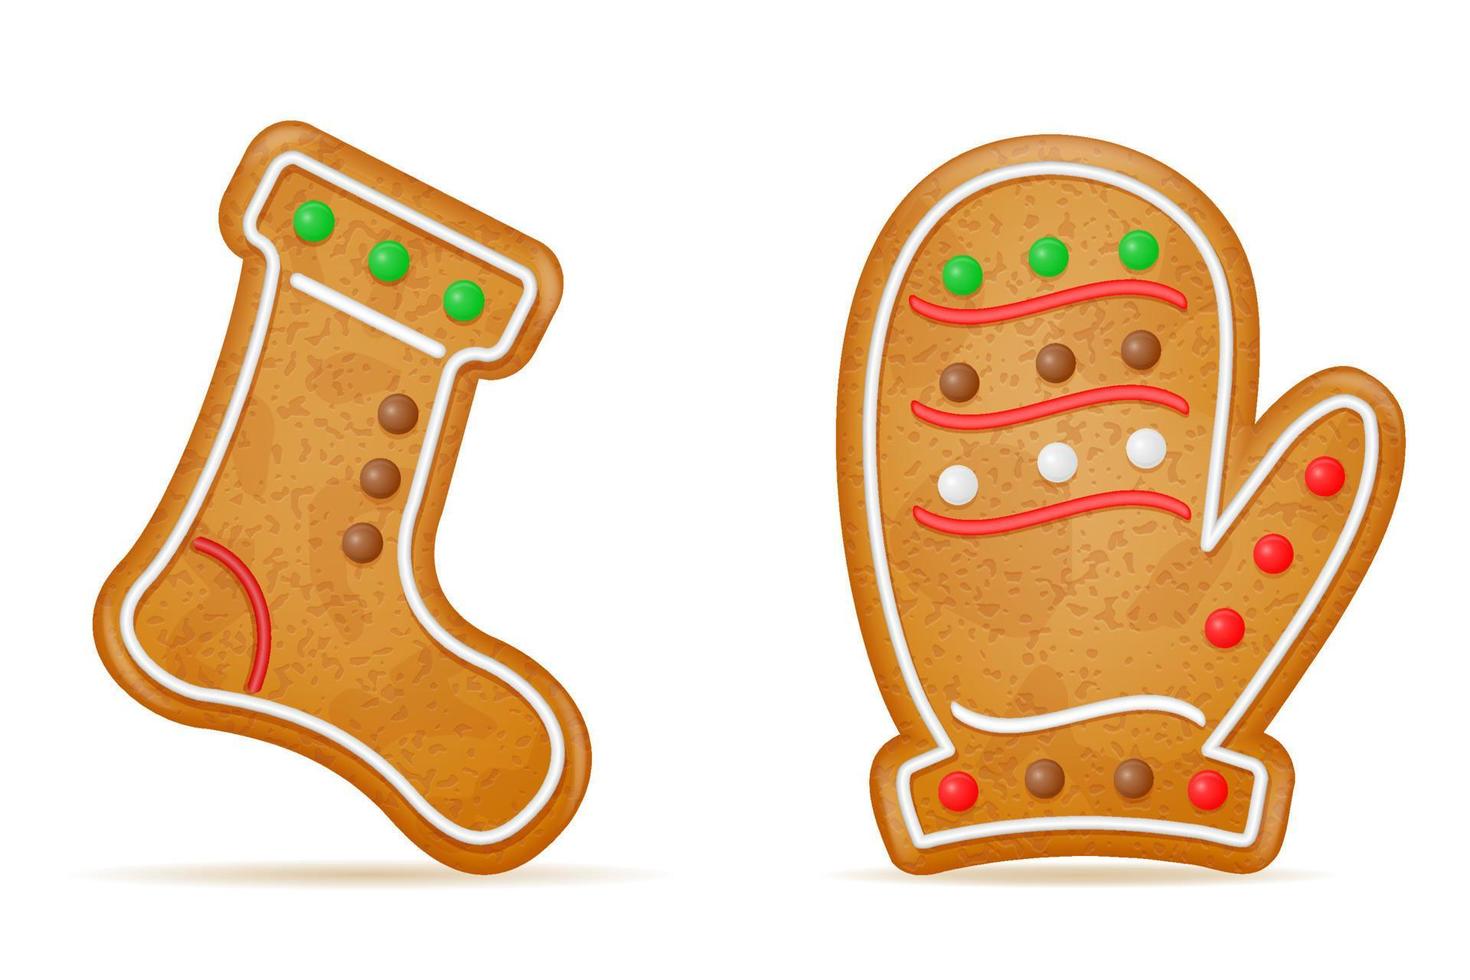 biscoitos de gengibre de natal para ilustração vetorial de celebração de feriado de ano novo isolado no fundo branco vetor